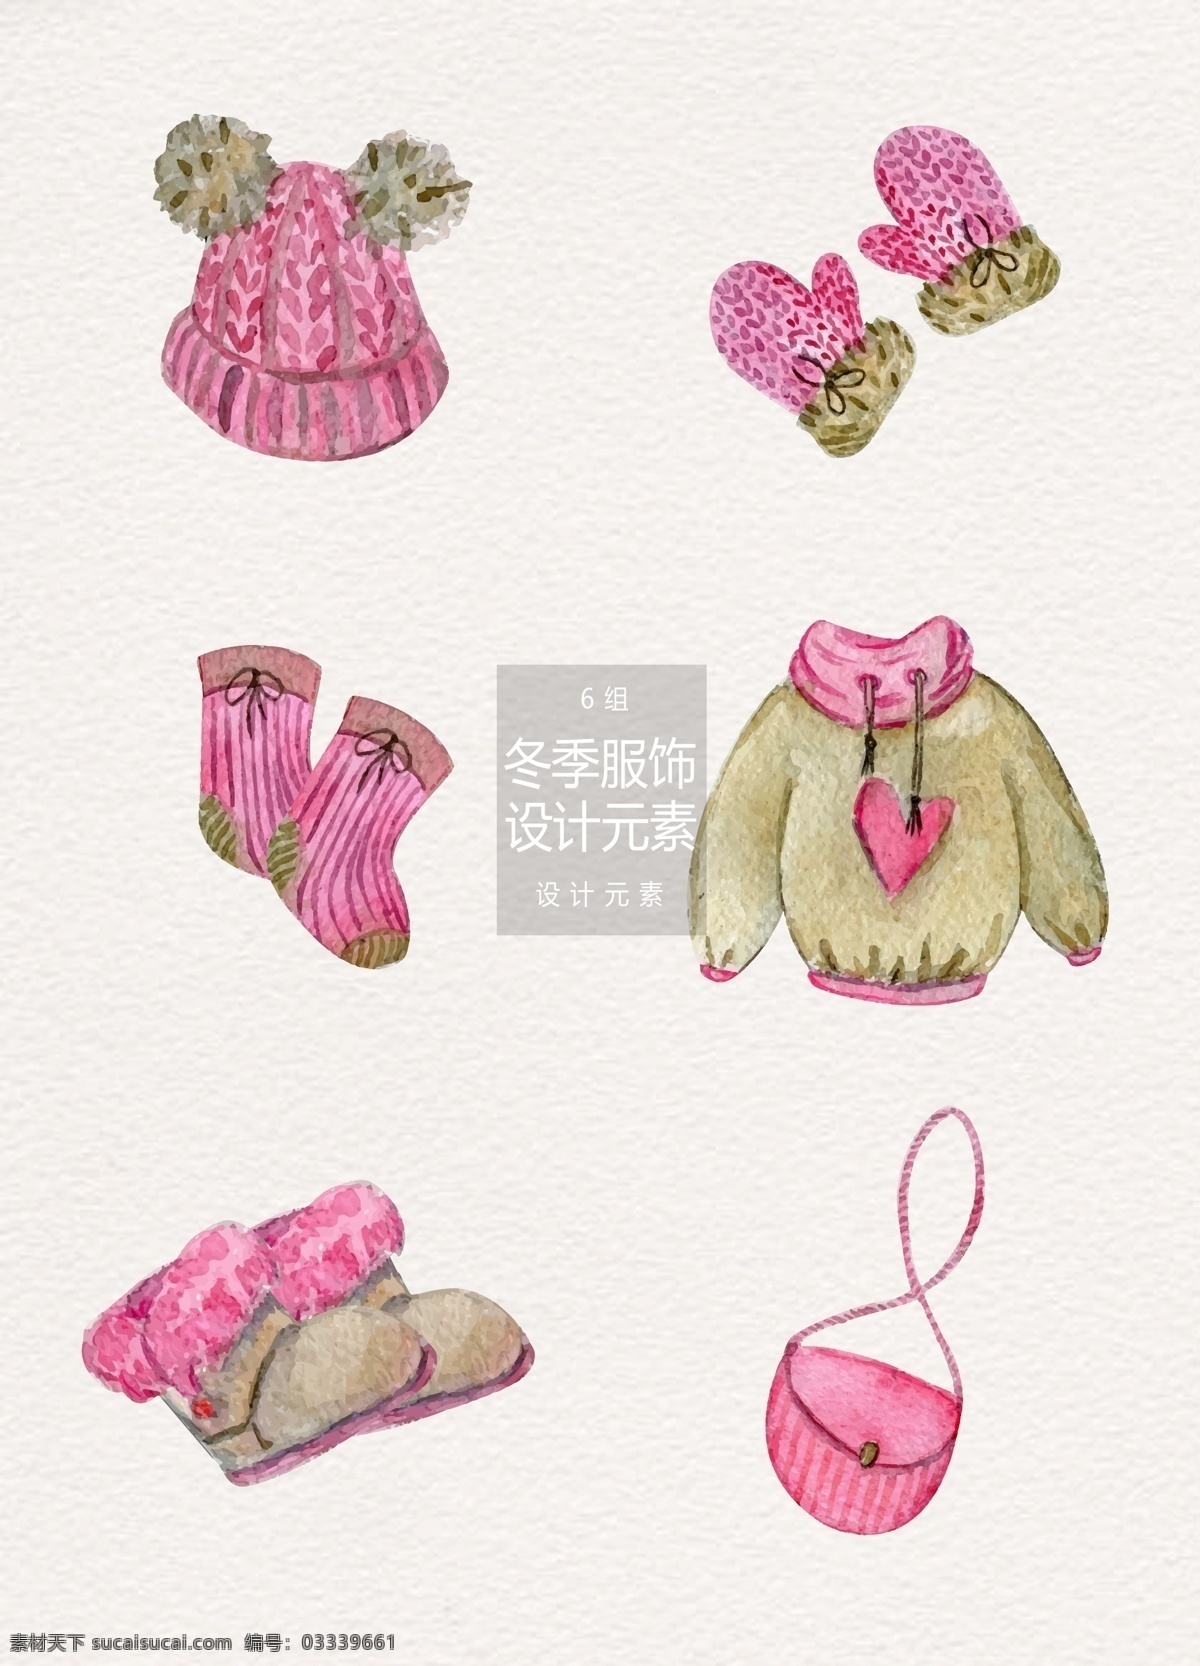 粉色 冬季 女性 服装设计 元素 服饰 冬天 袜子 帽子 冬季女性服装 女性服装 服饰搭配 卫衣 手套 雪地靴